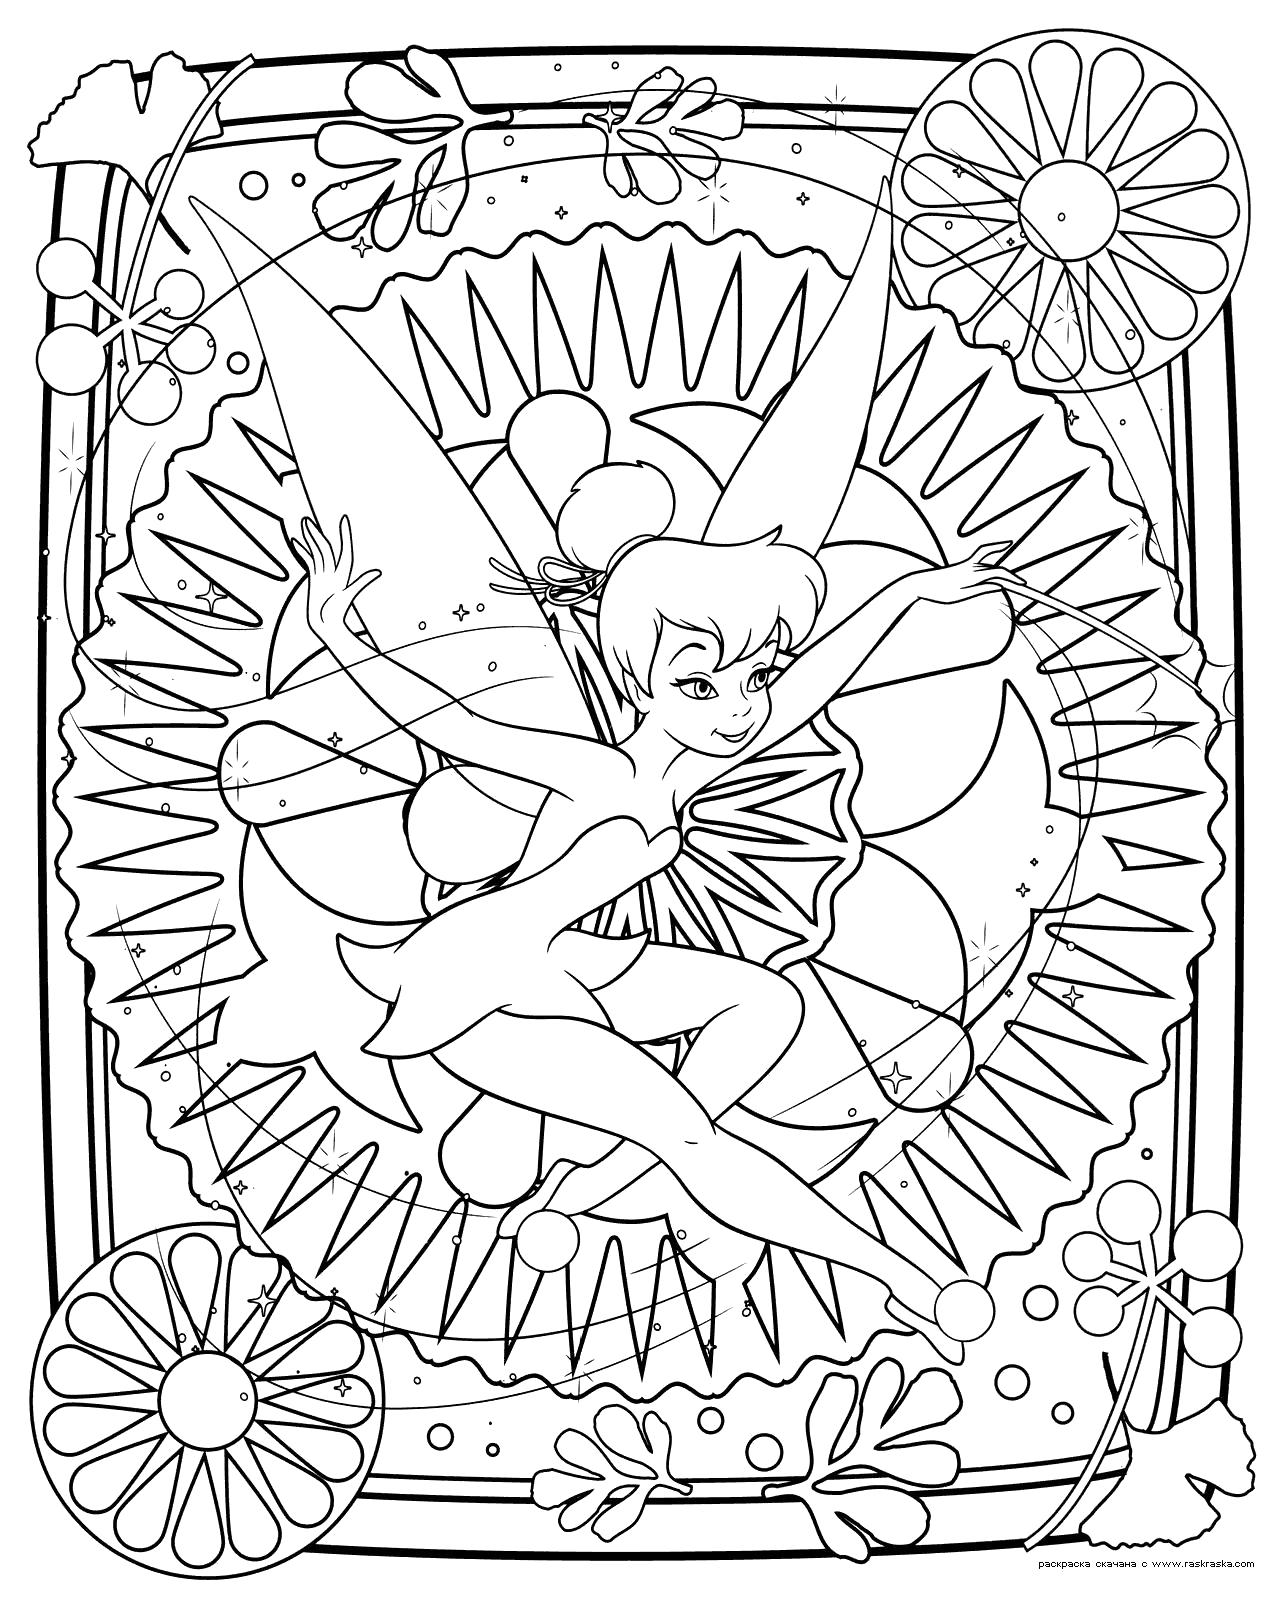 Название: Раскраска Раскраска Раскраска феи Динь-Динь. Раскраска Разукрашка из мультфильма Феи. Раскраска для девочек Динь-Динь - это маленькая фея. Категория: мифические существа. Теги: фея.